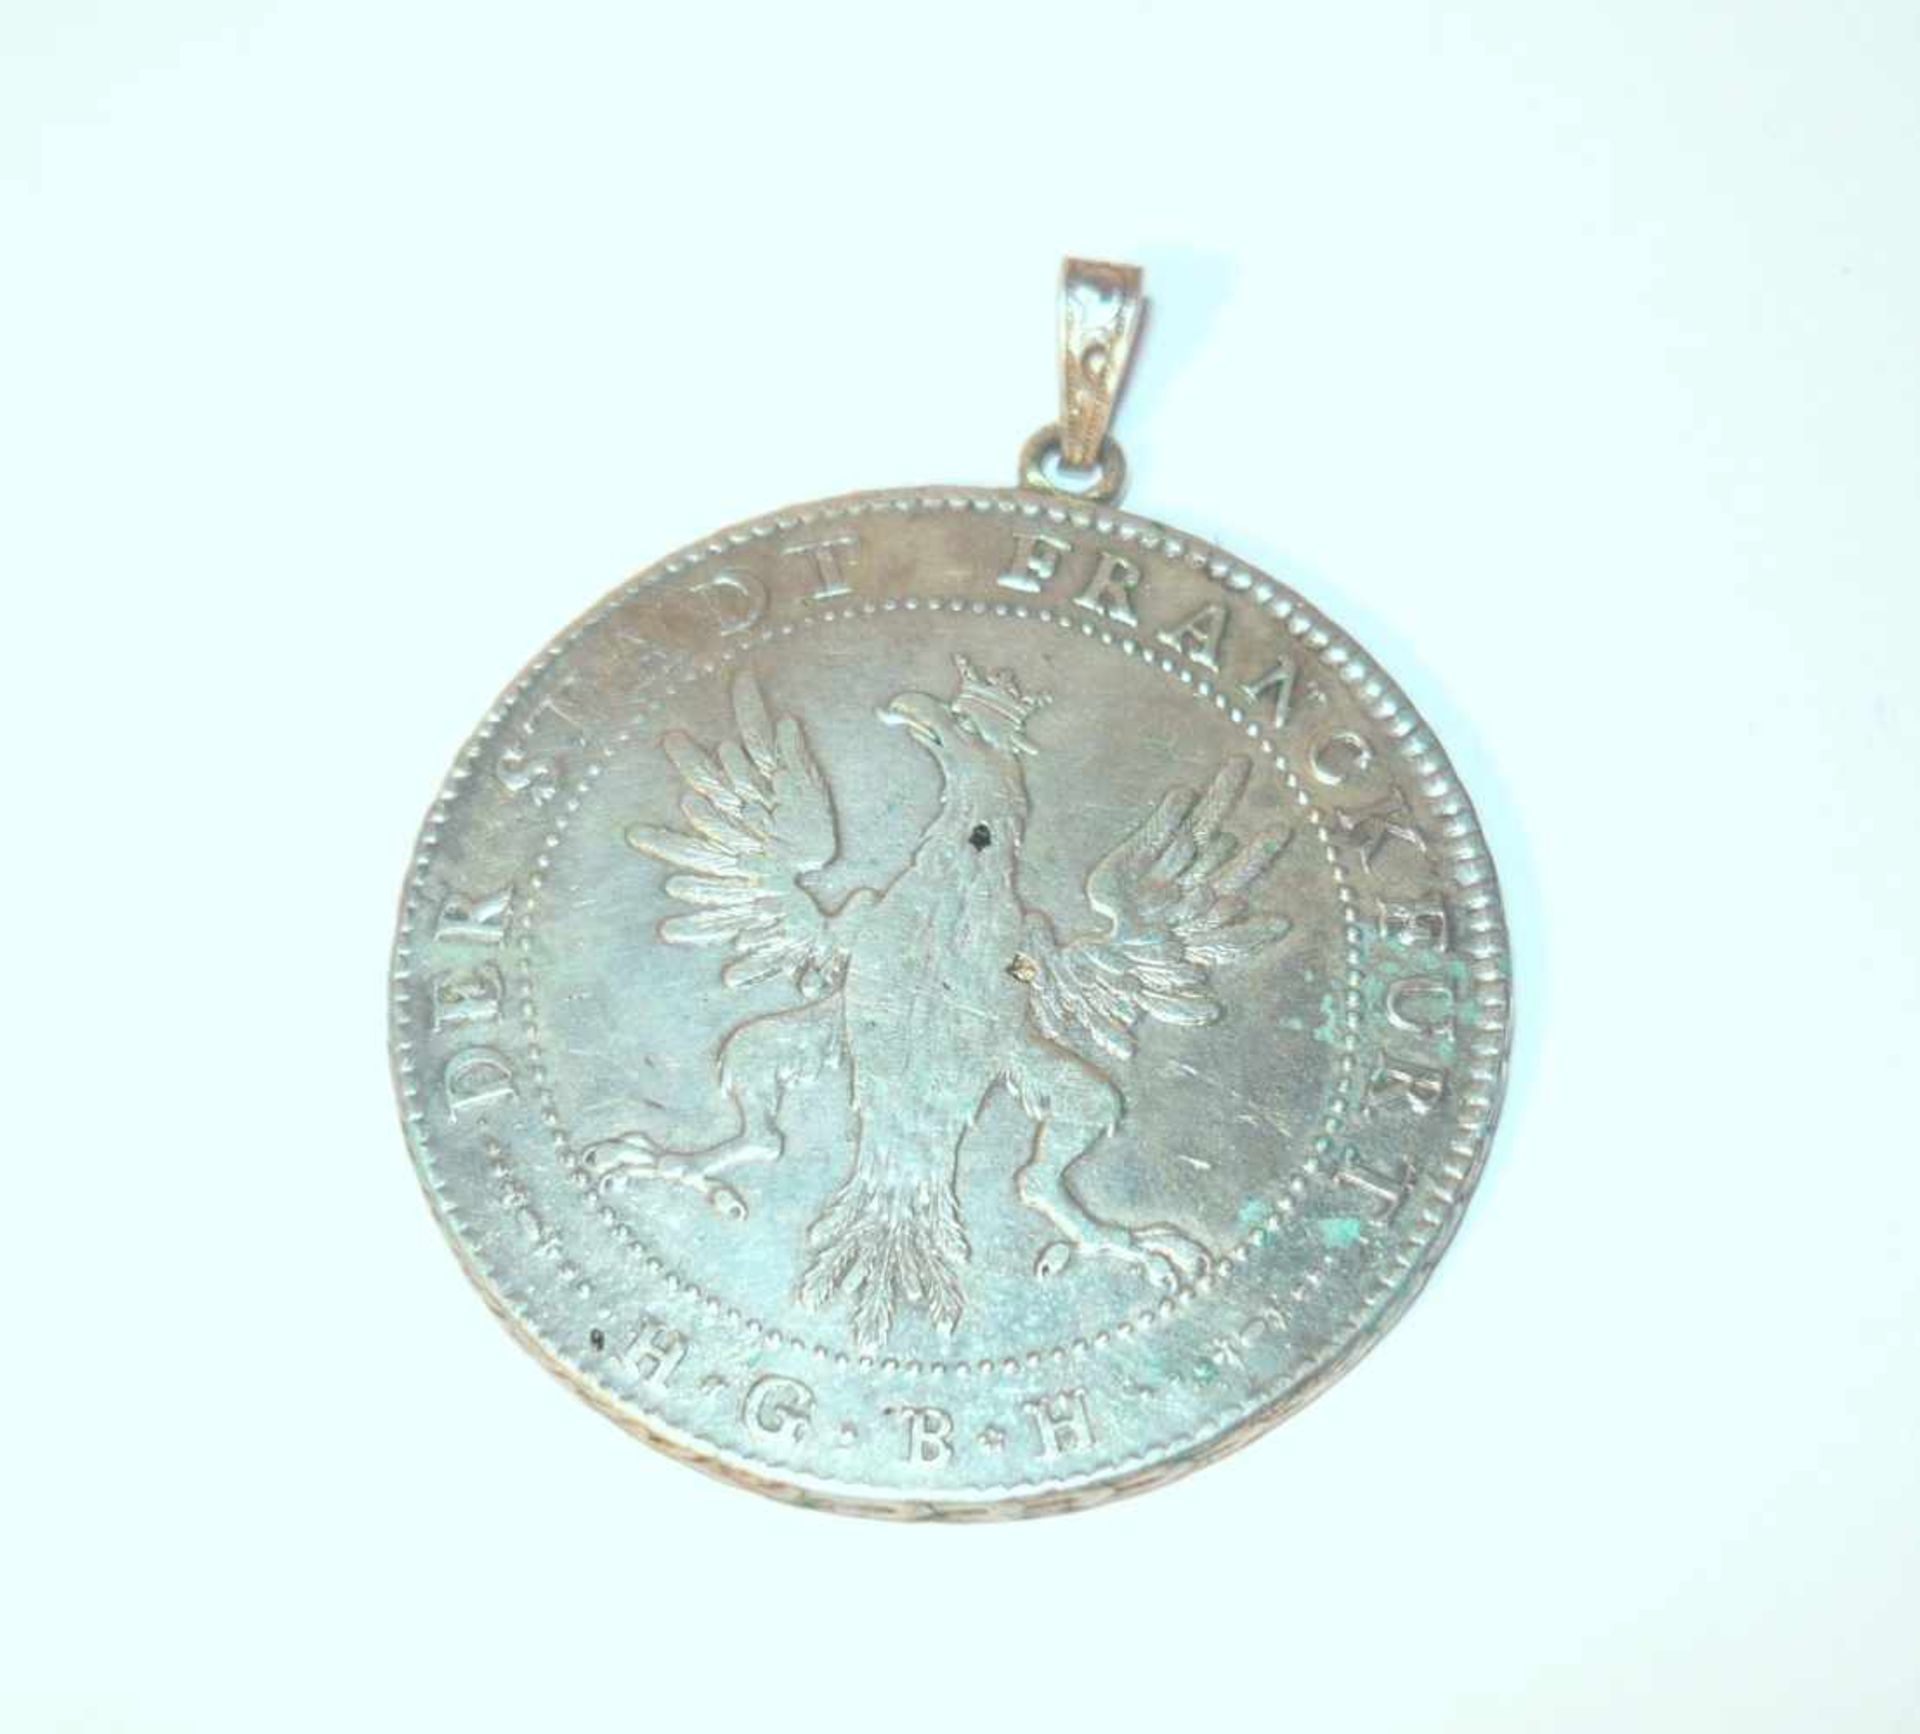 zurückgezogenConvention thaler from 1796. Silver. Diam. app. 4 cm. - Bild 2 aus 2